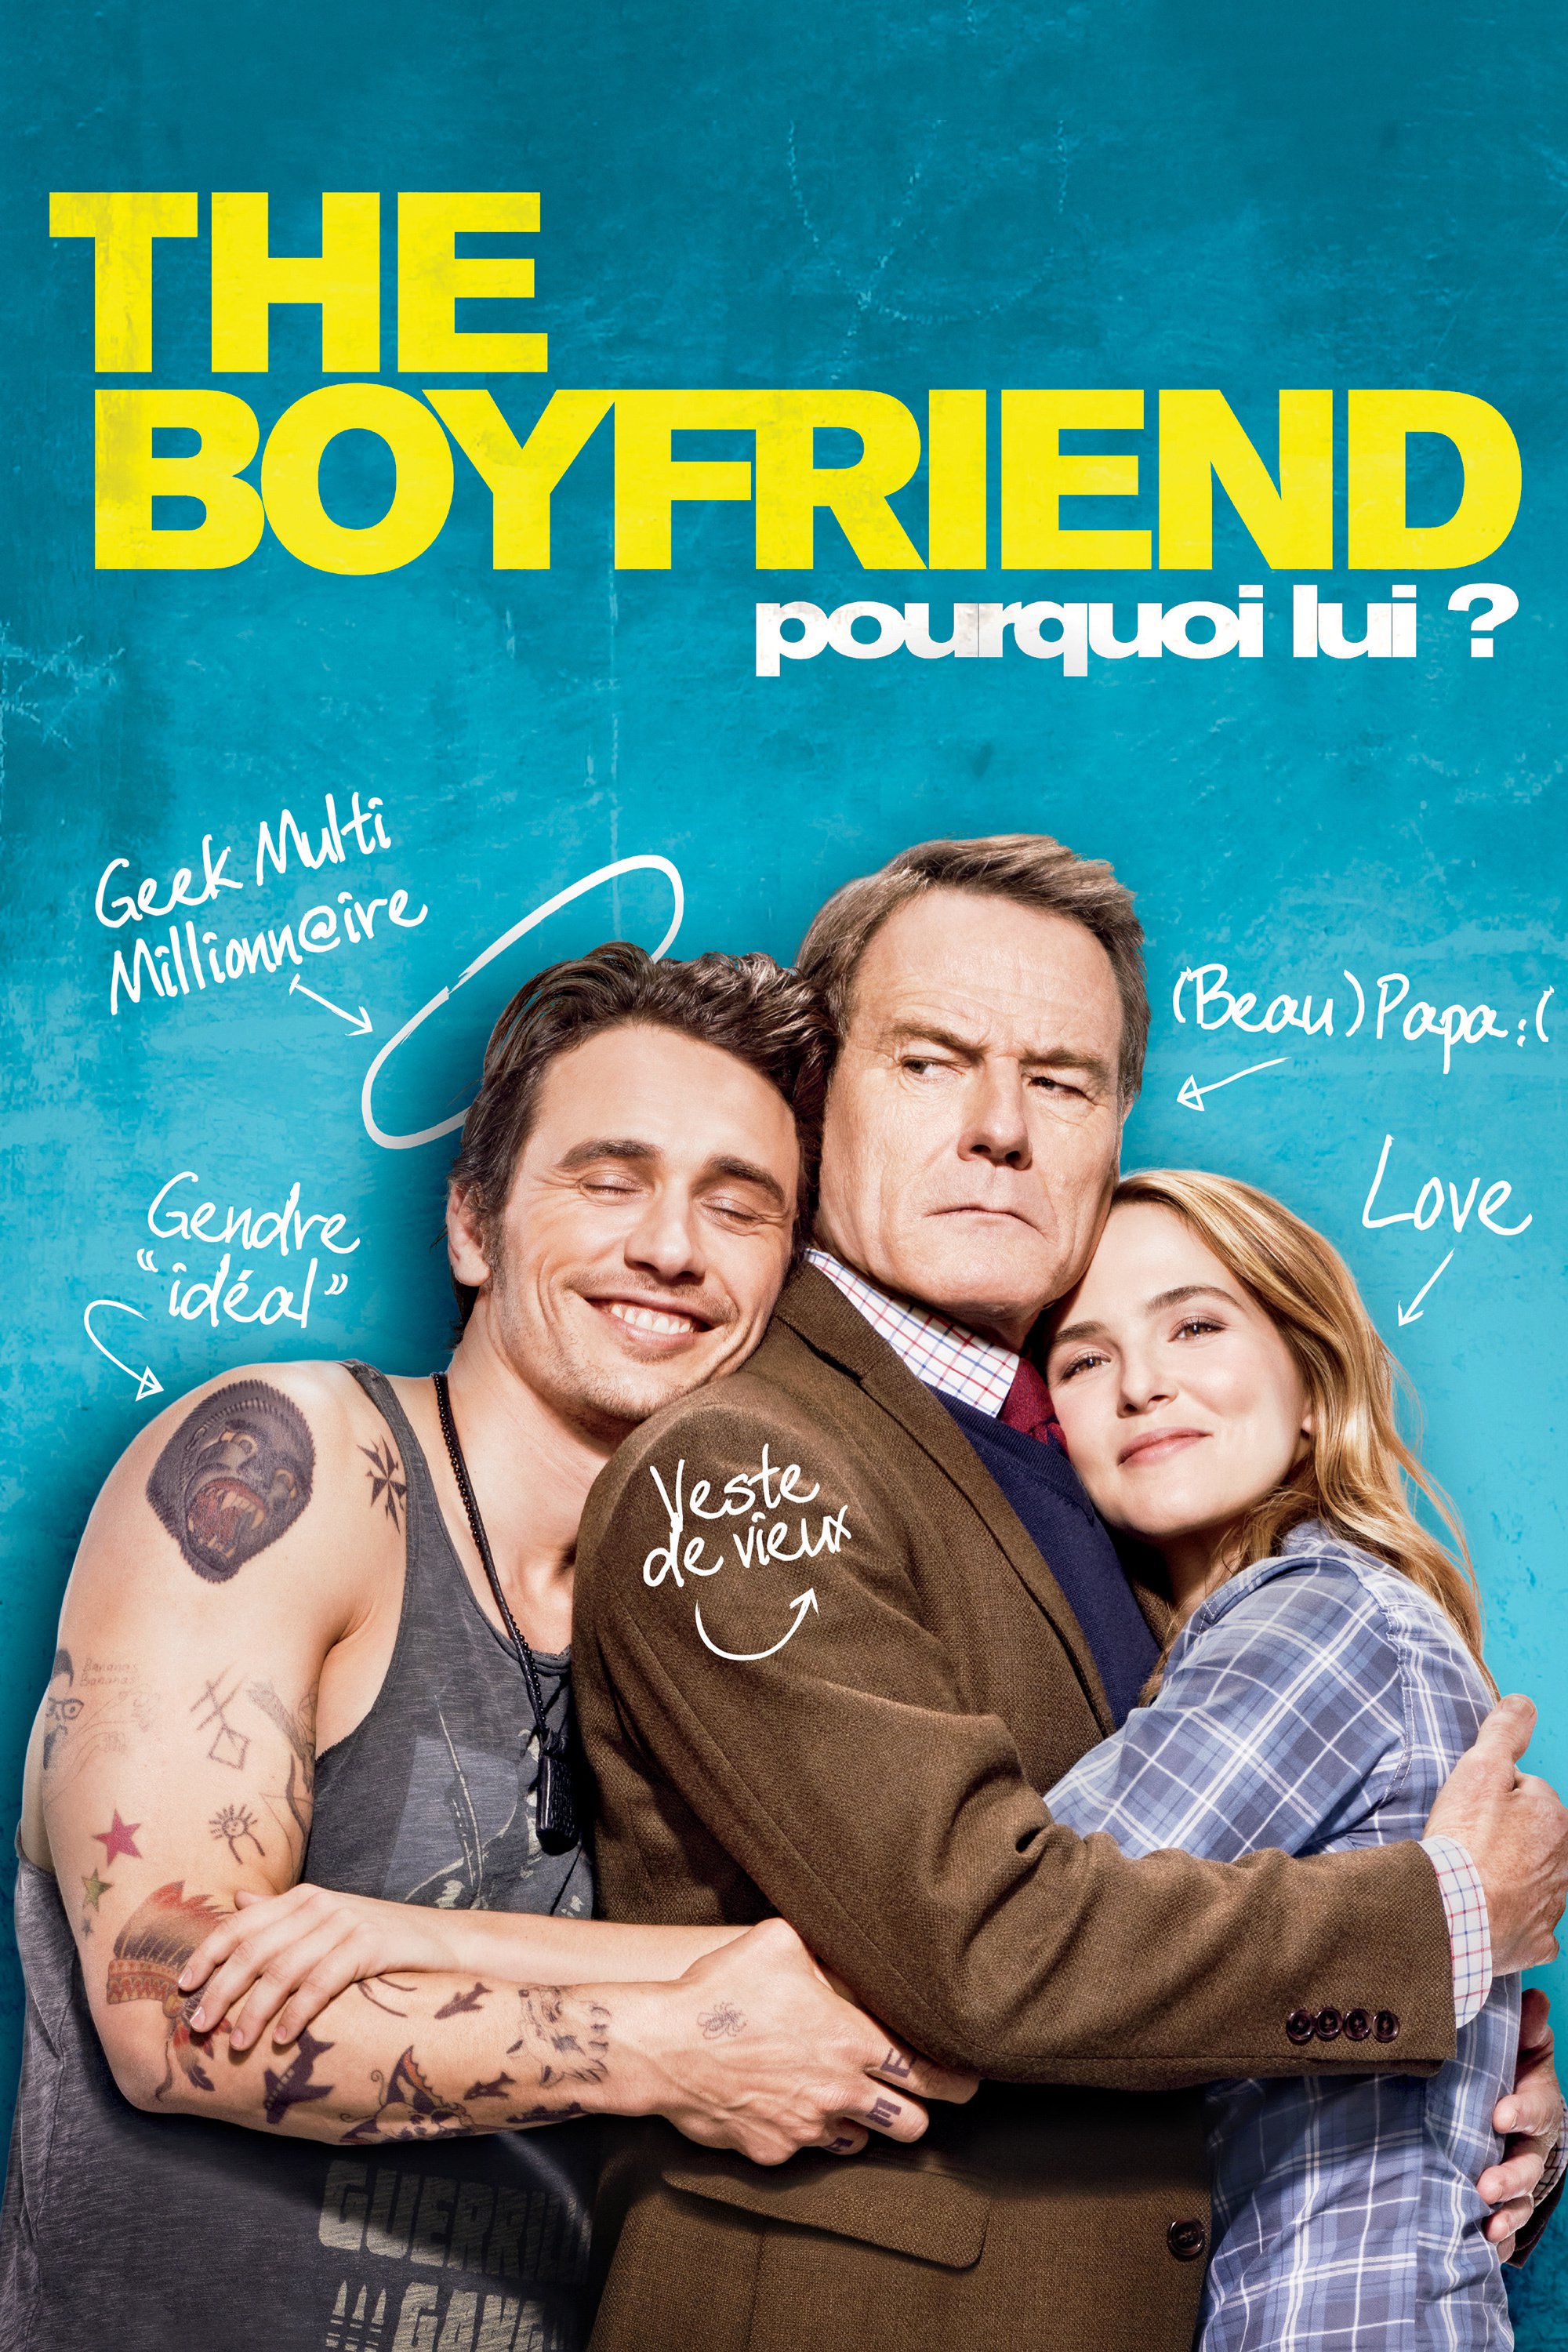 The Boyfriend - Pourquoi lui ?